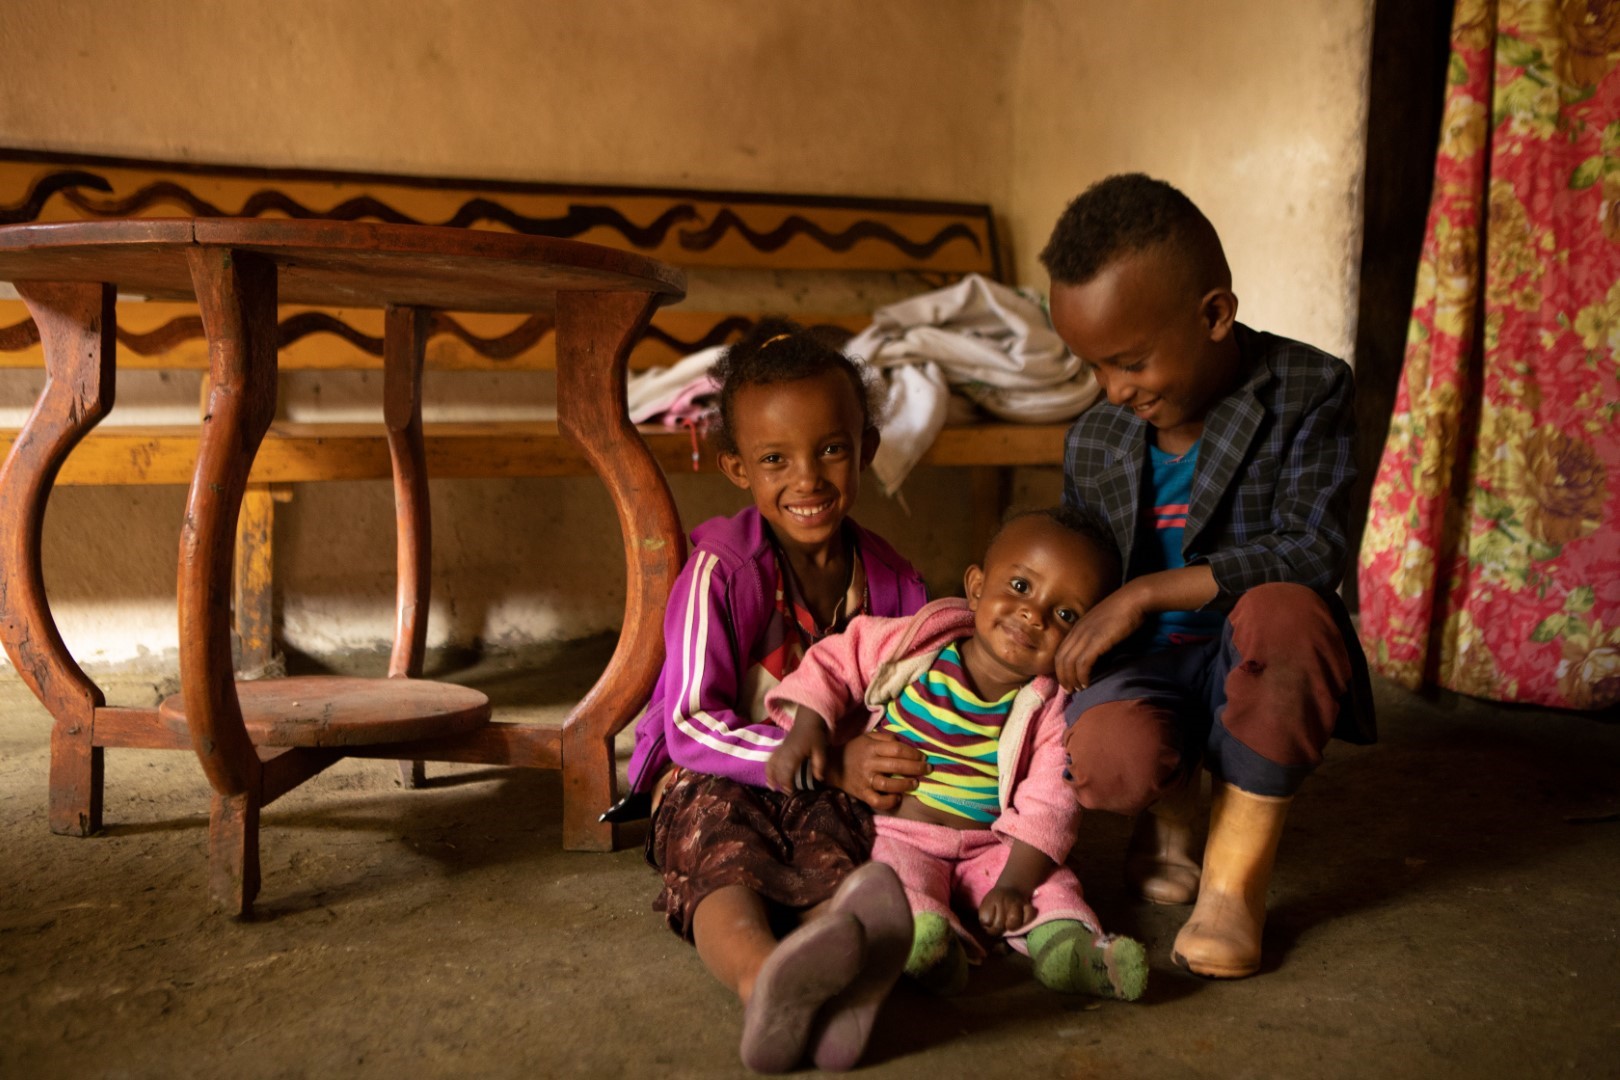 Zwei äthiopische Kleinkinder und ein Baby lächeln am Flur sitzend in die Kamera